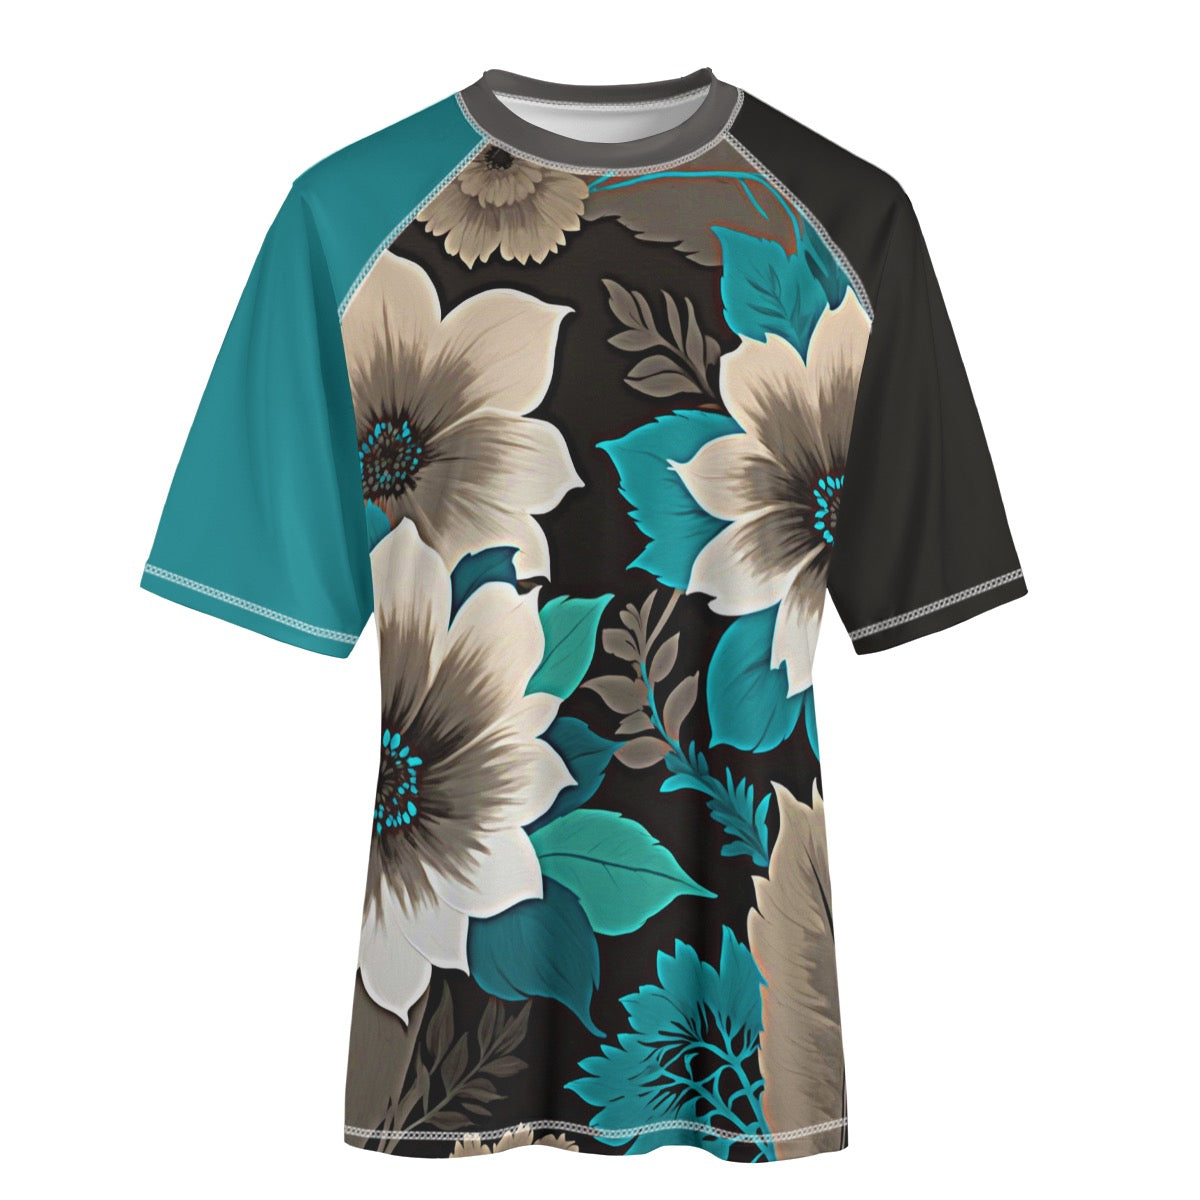 Turquoise Gate -- Unisex Yoga Sports Short Sleeve T-Shirt